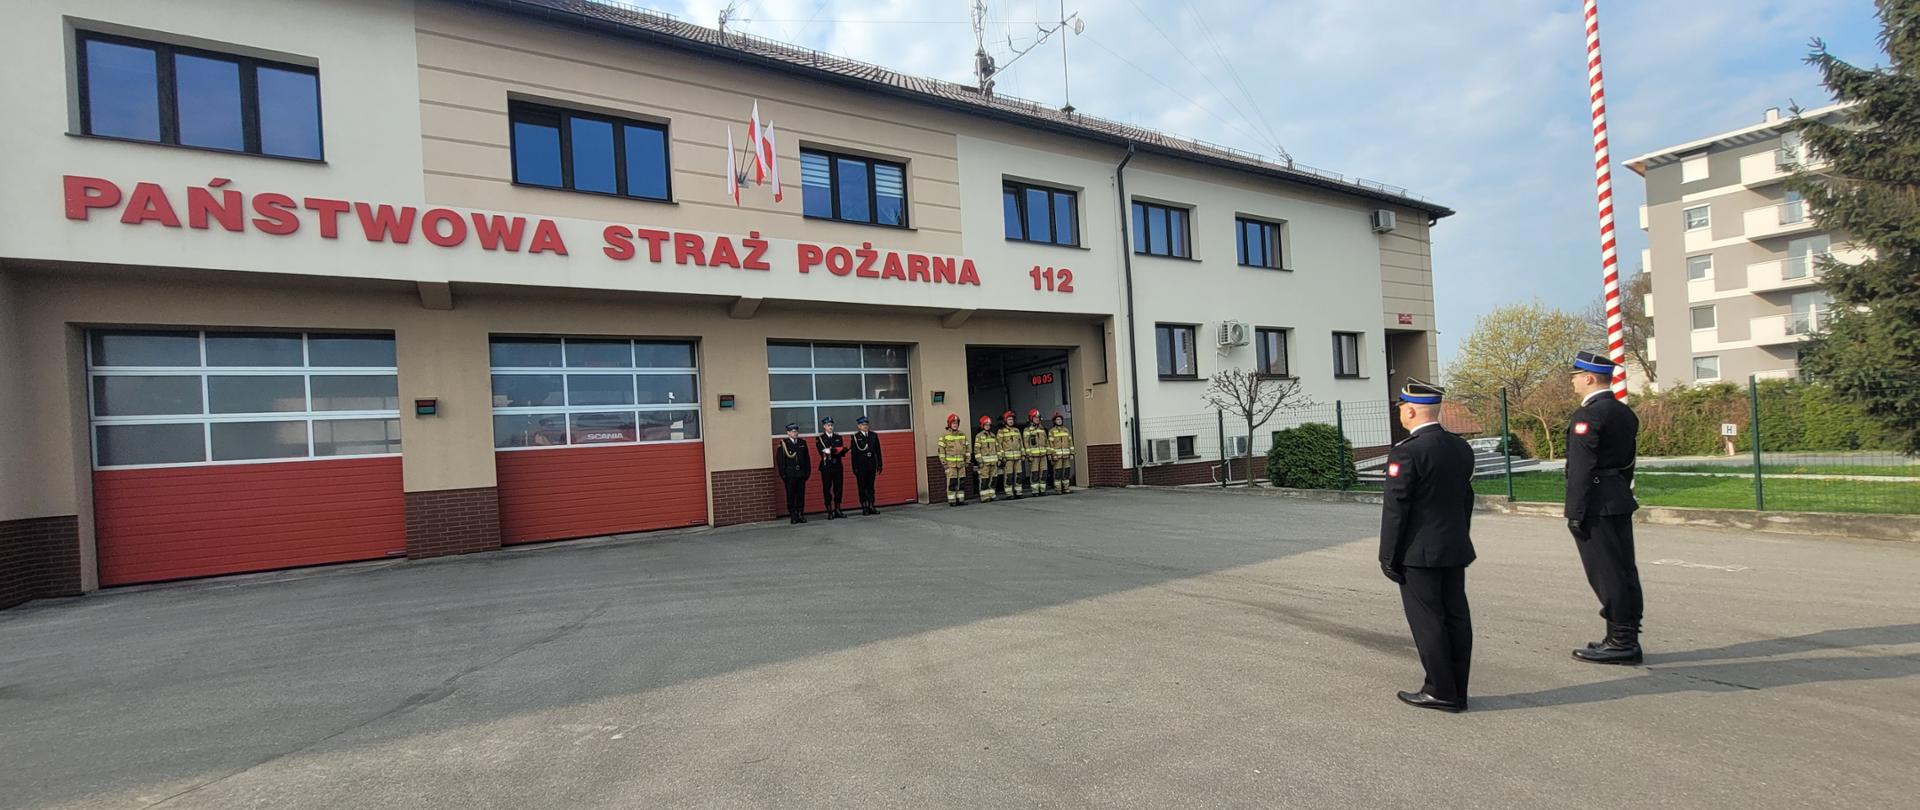 Uroczysta zbiórka z okazji Dnia Flagi Rzeczypospolitej, strażacy w ubraniach specjalnych i mundurach galowych stoją przed budynkiem komendy 